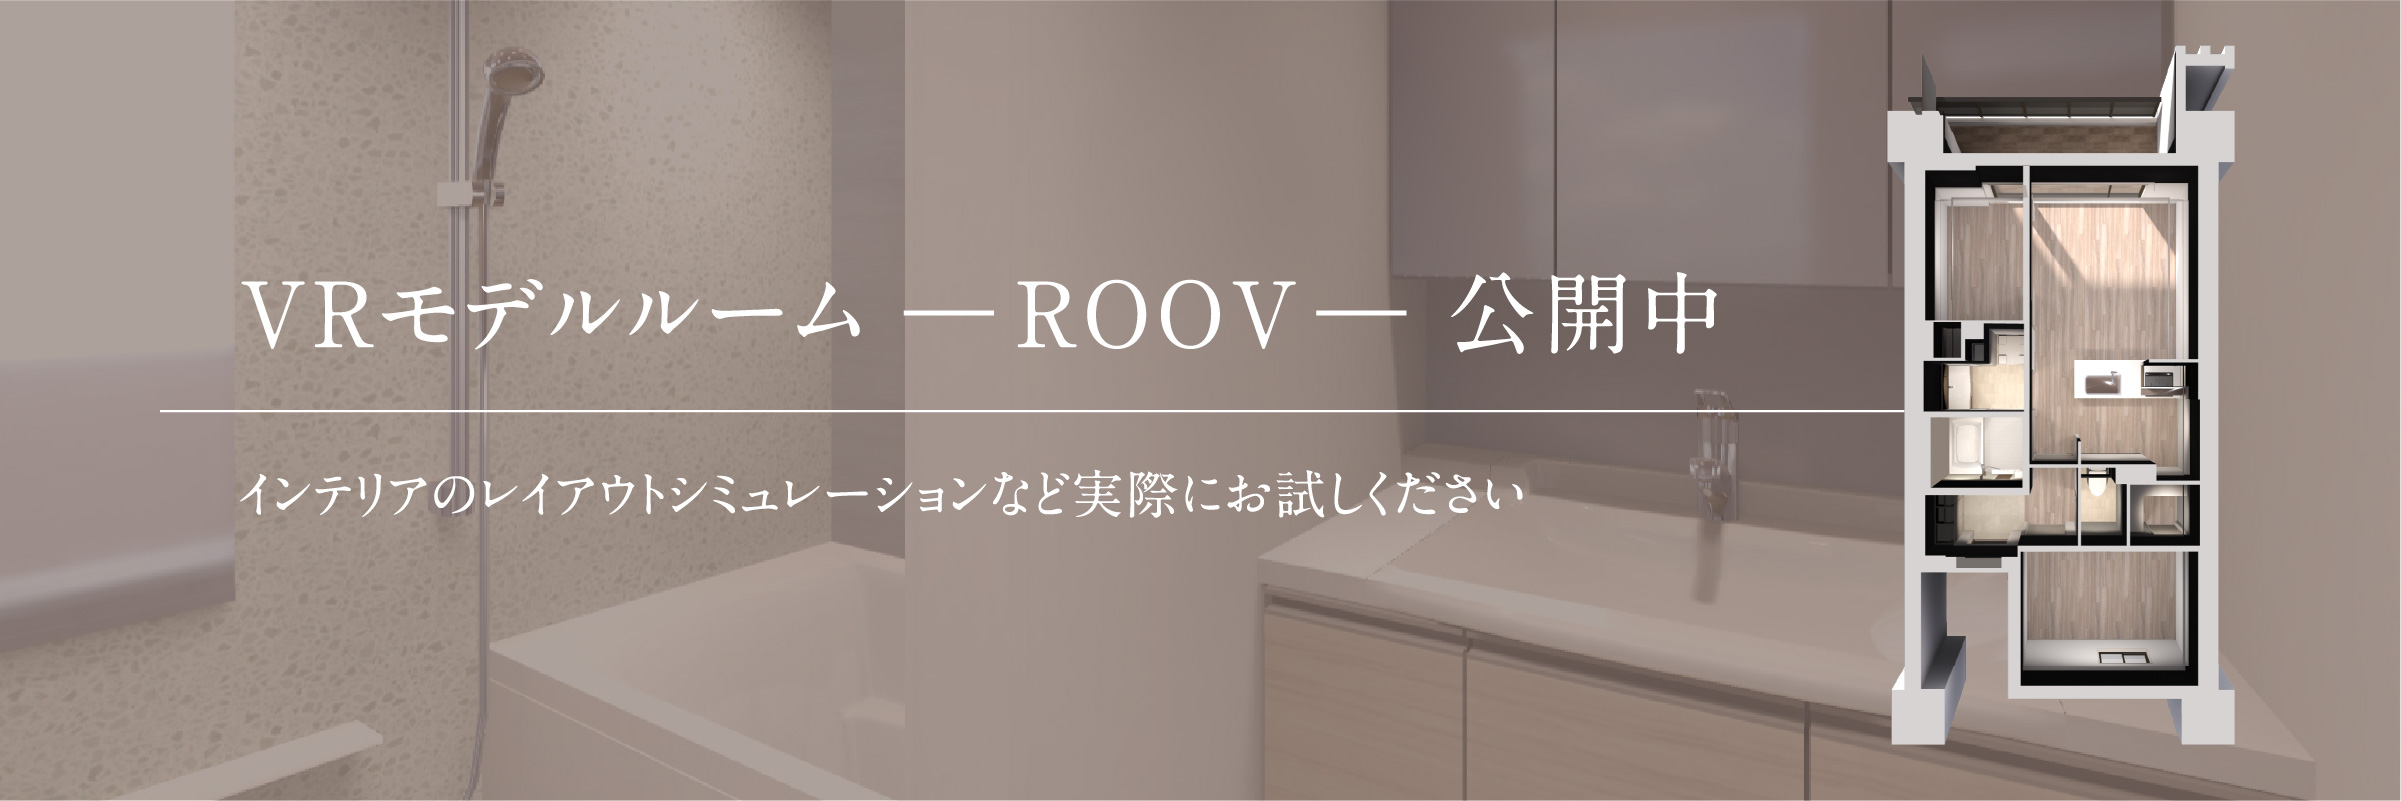 VRモデルルーム ―ROOV― 公開中